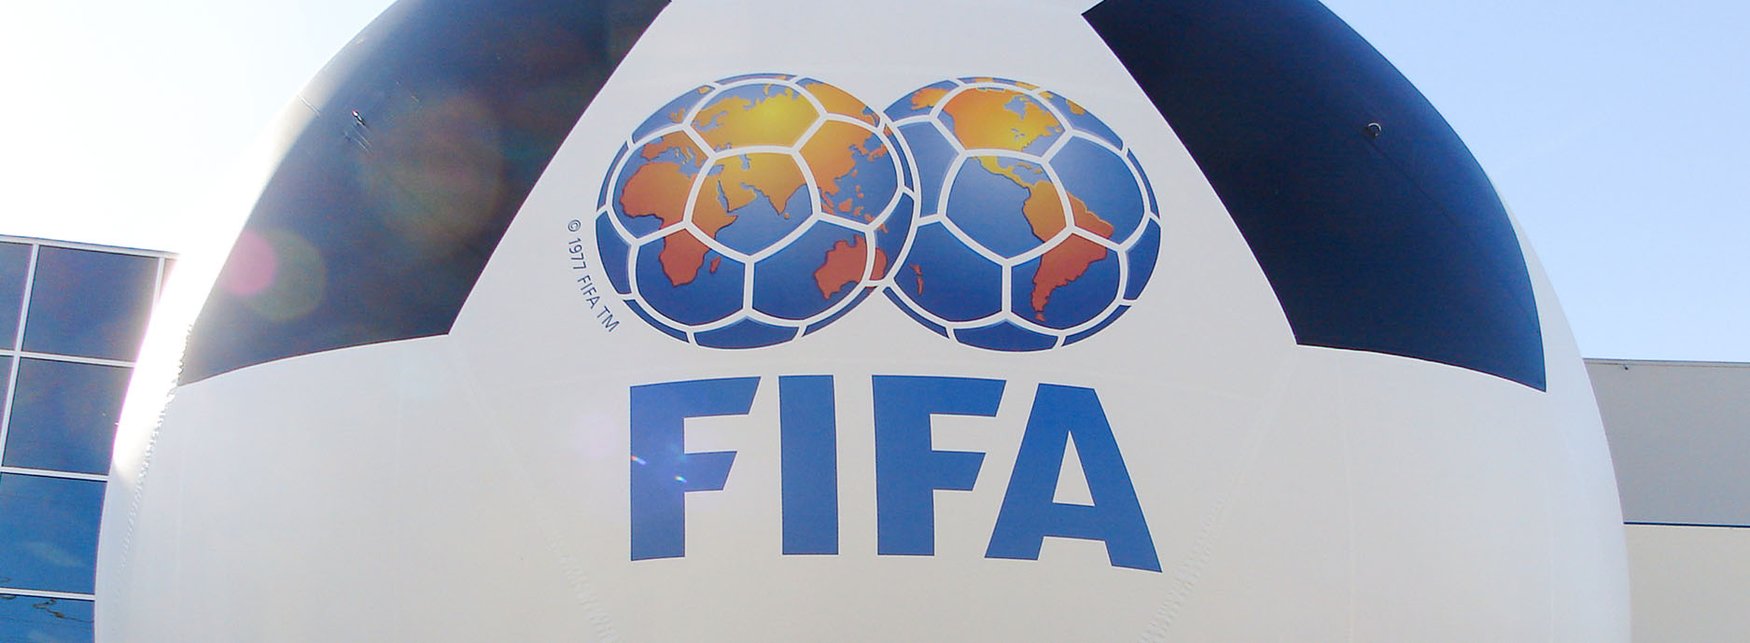 fifa-soccer-ball-header.jpg